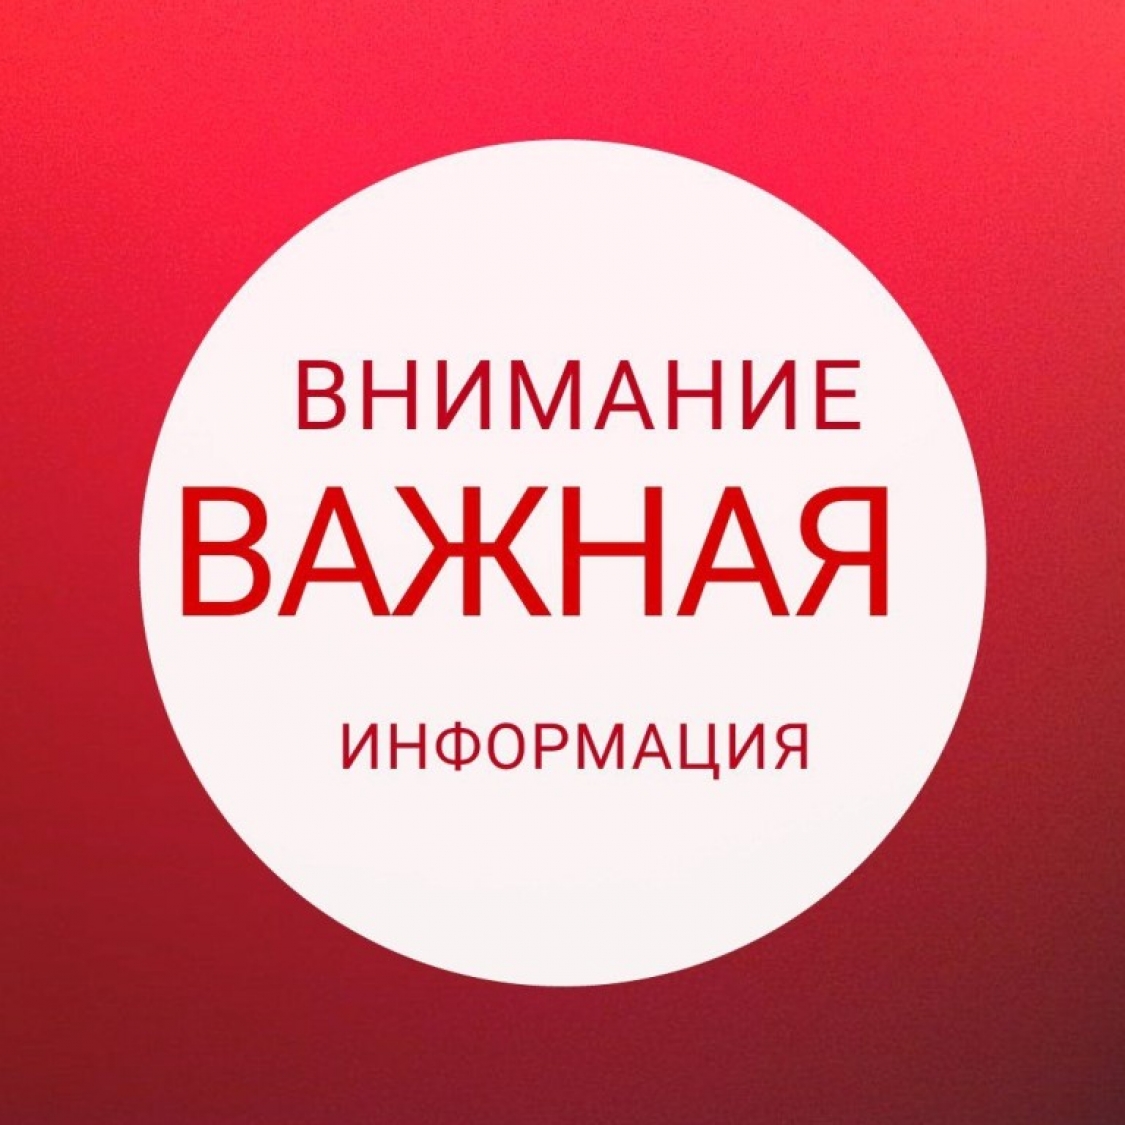 Родительское собрание пройдет в прямом эфире социальной сети ВКонтакте..